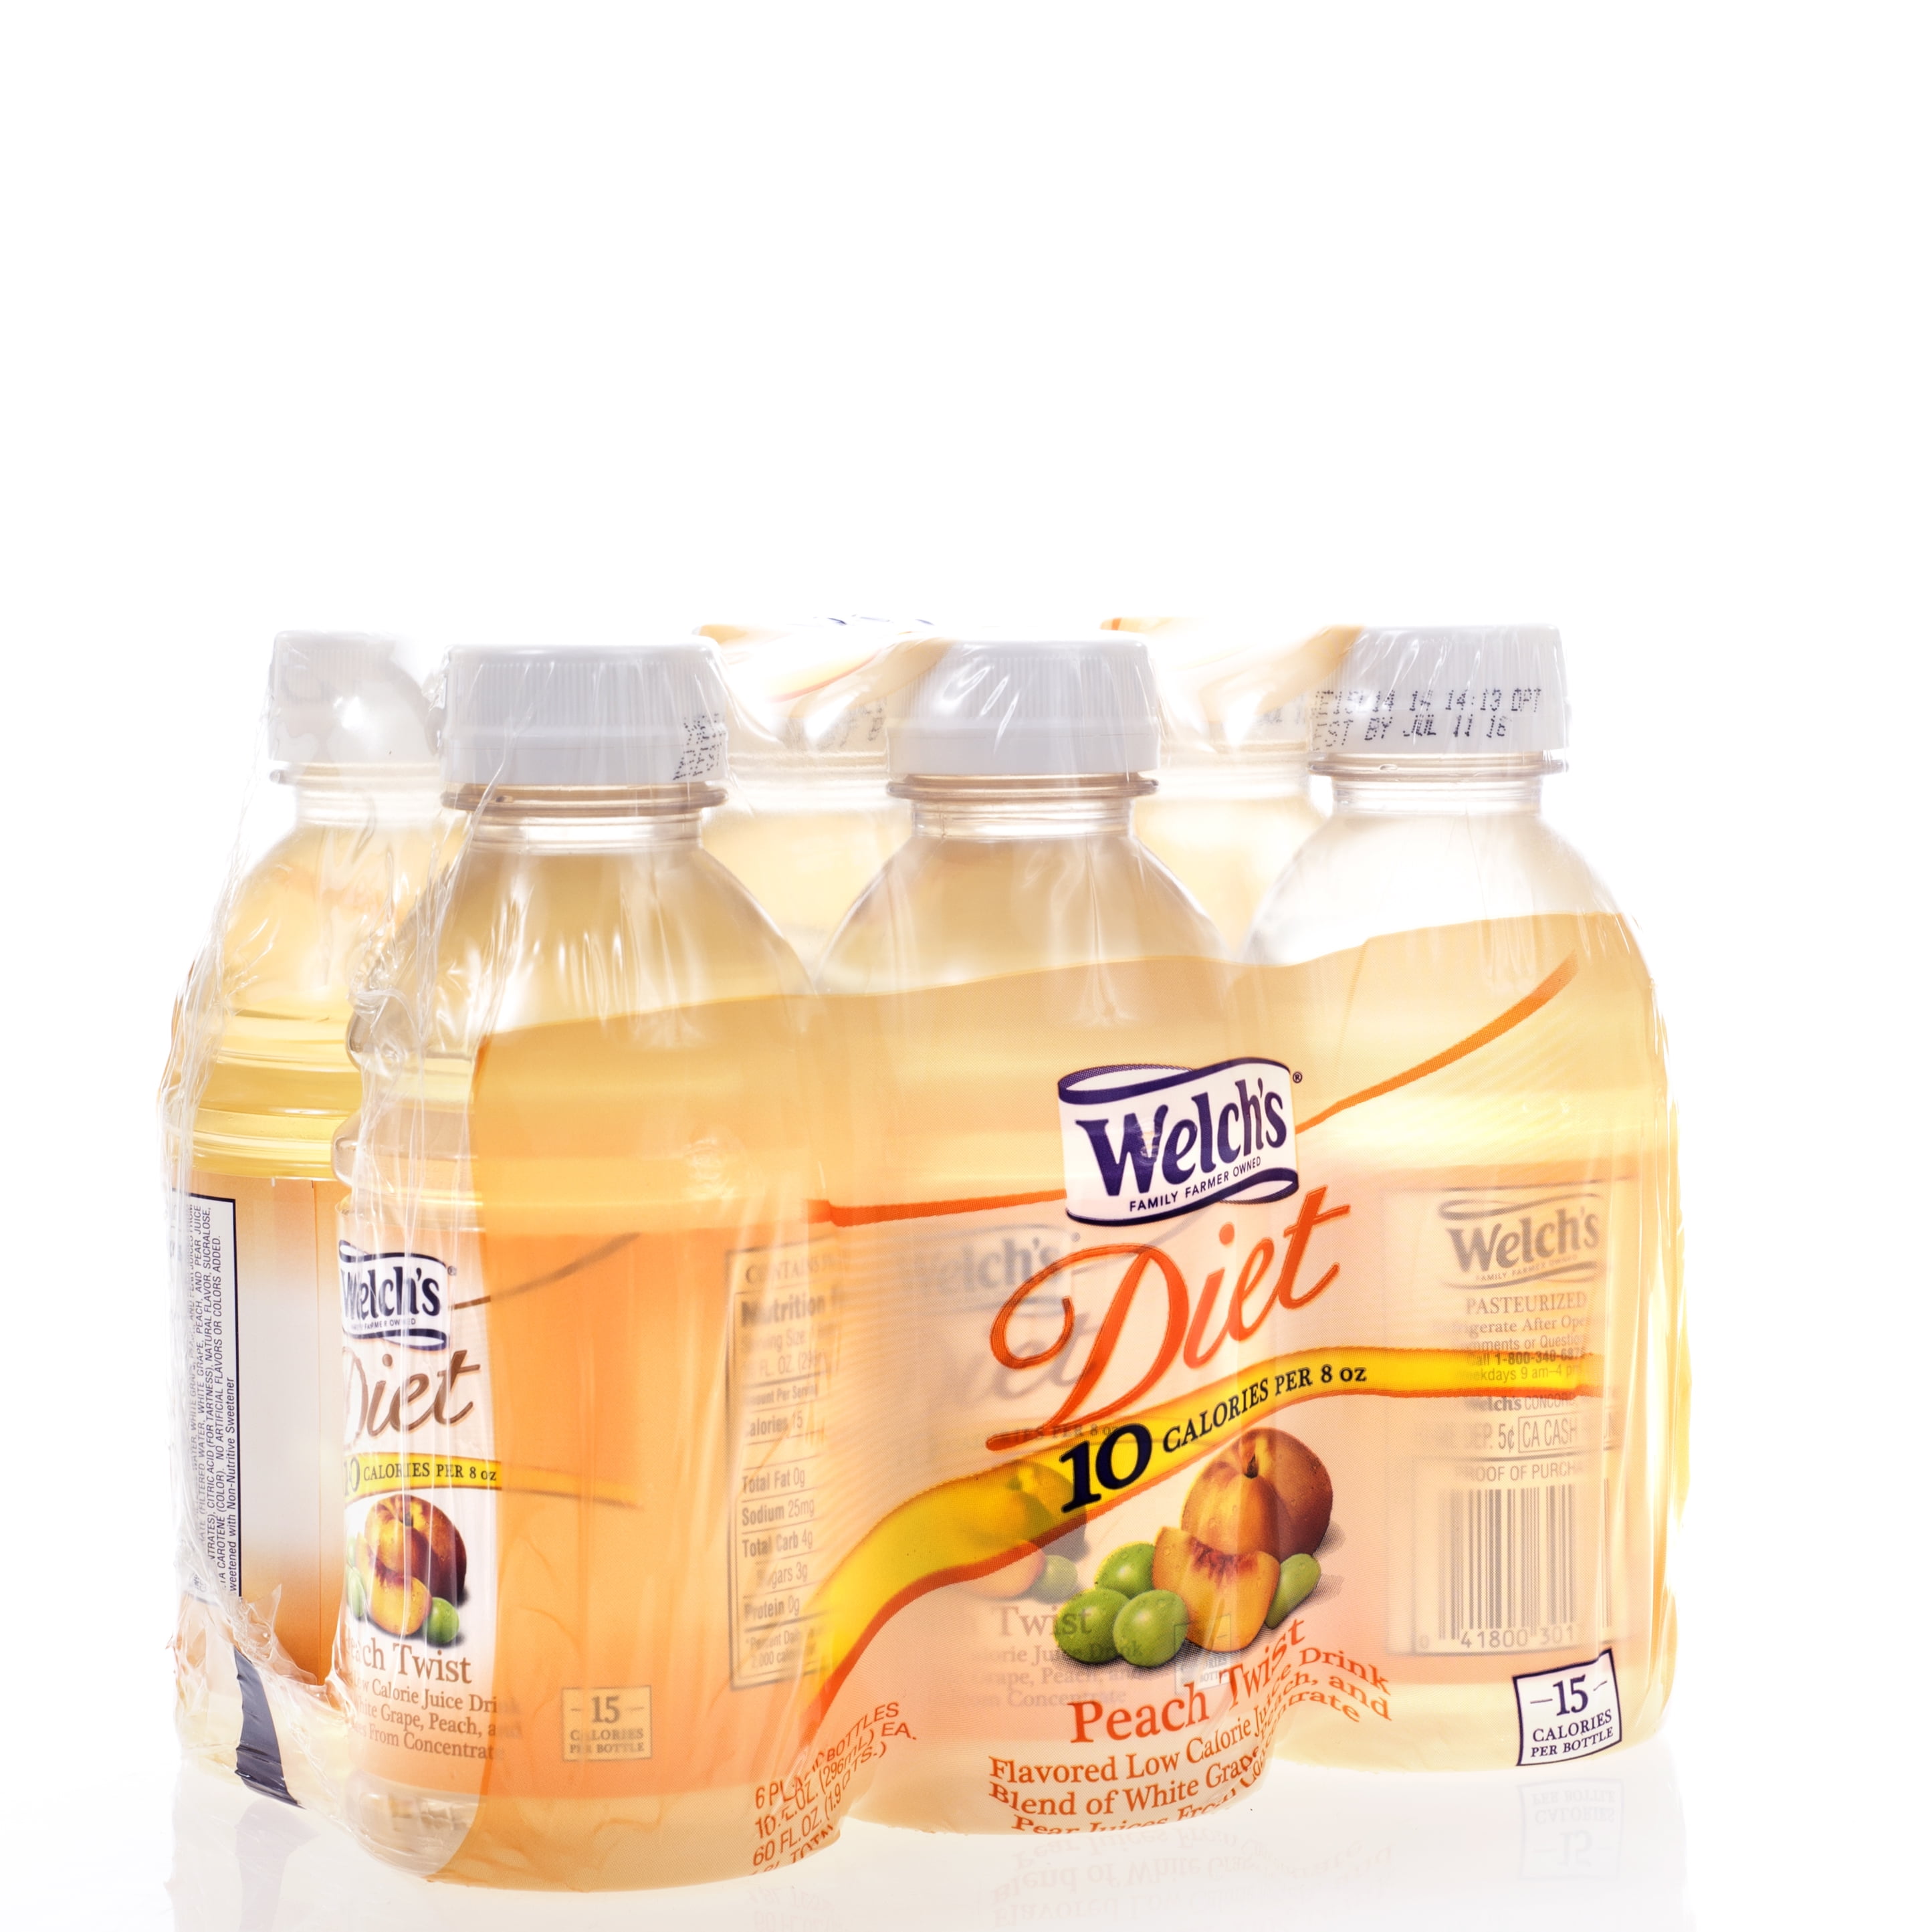 Welch's Diet Peach Twist Juice Drink, 10 Fl. Oz., Count